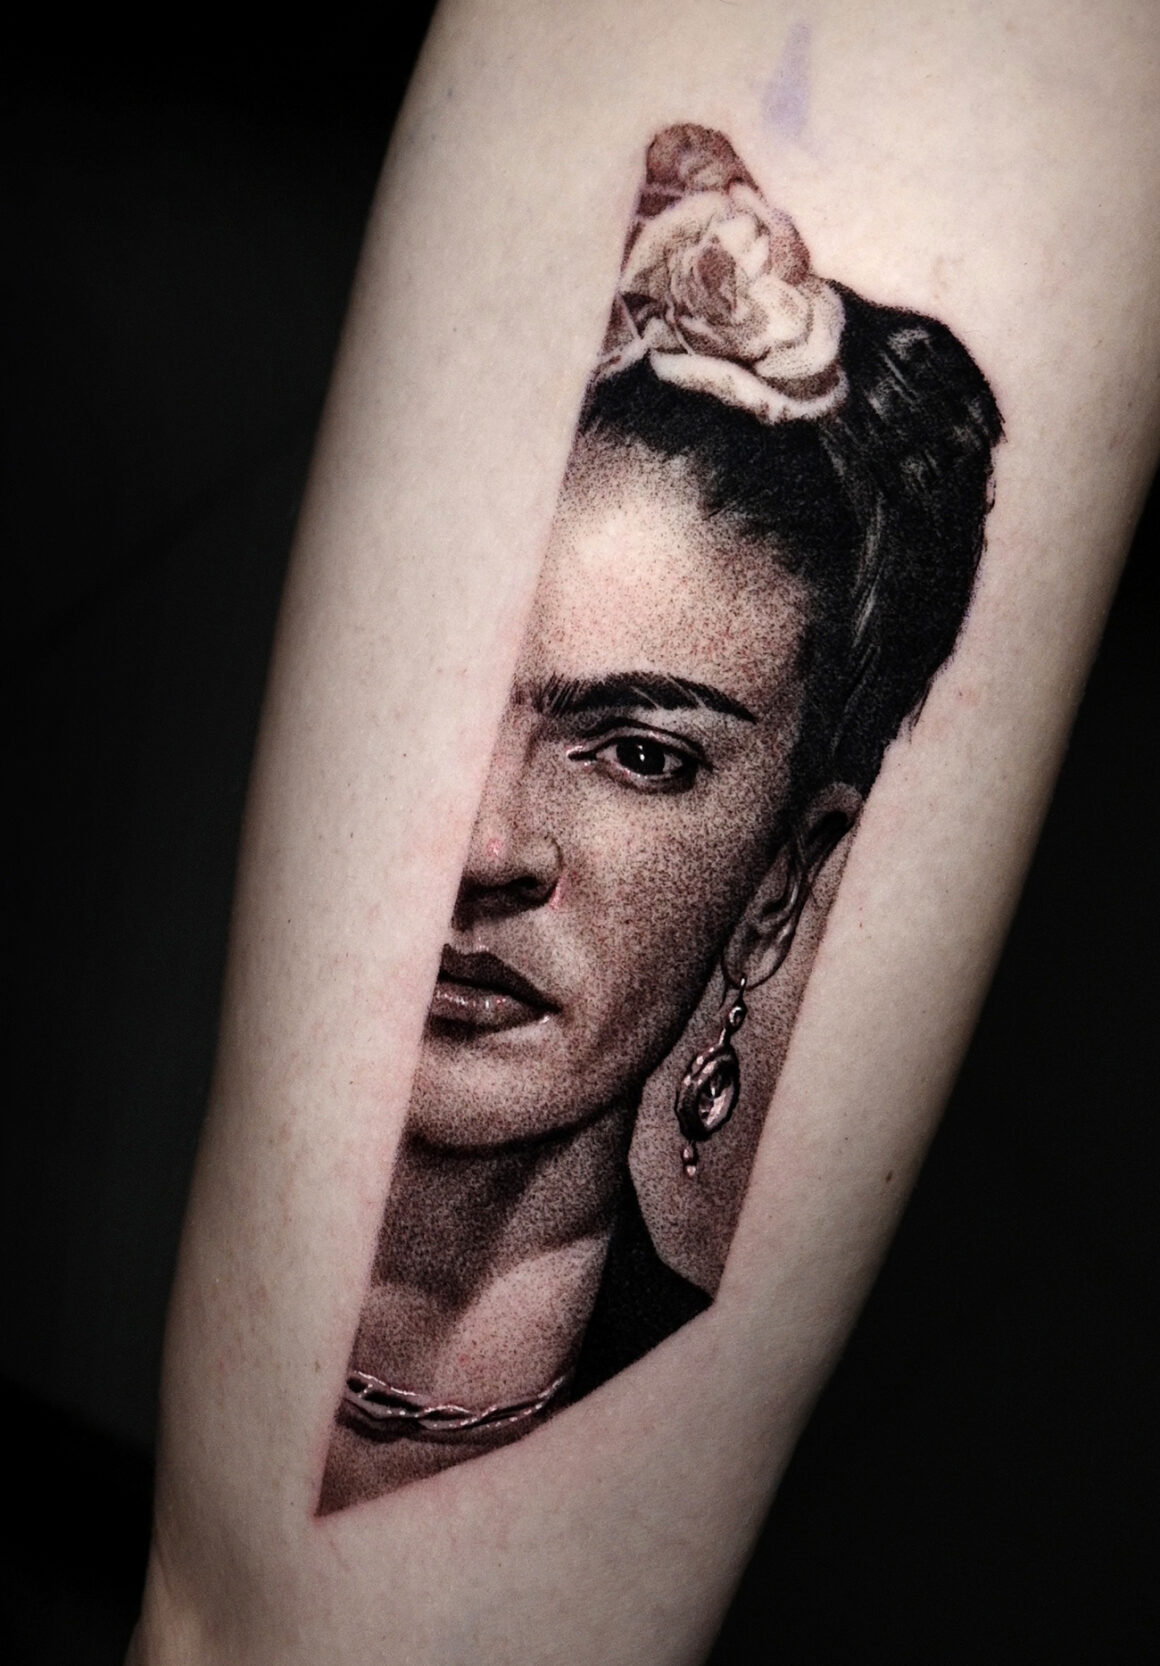 Tattoo by Max Bondar, @oplart